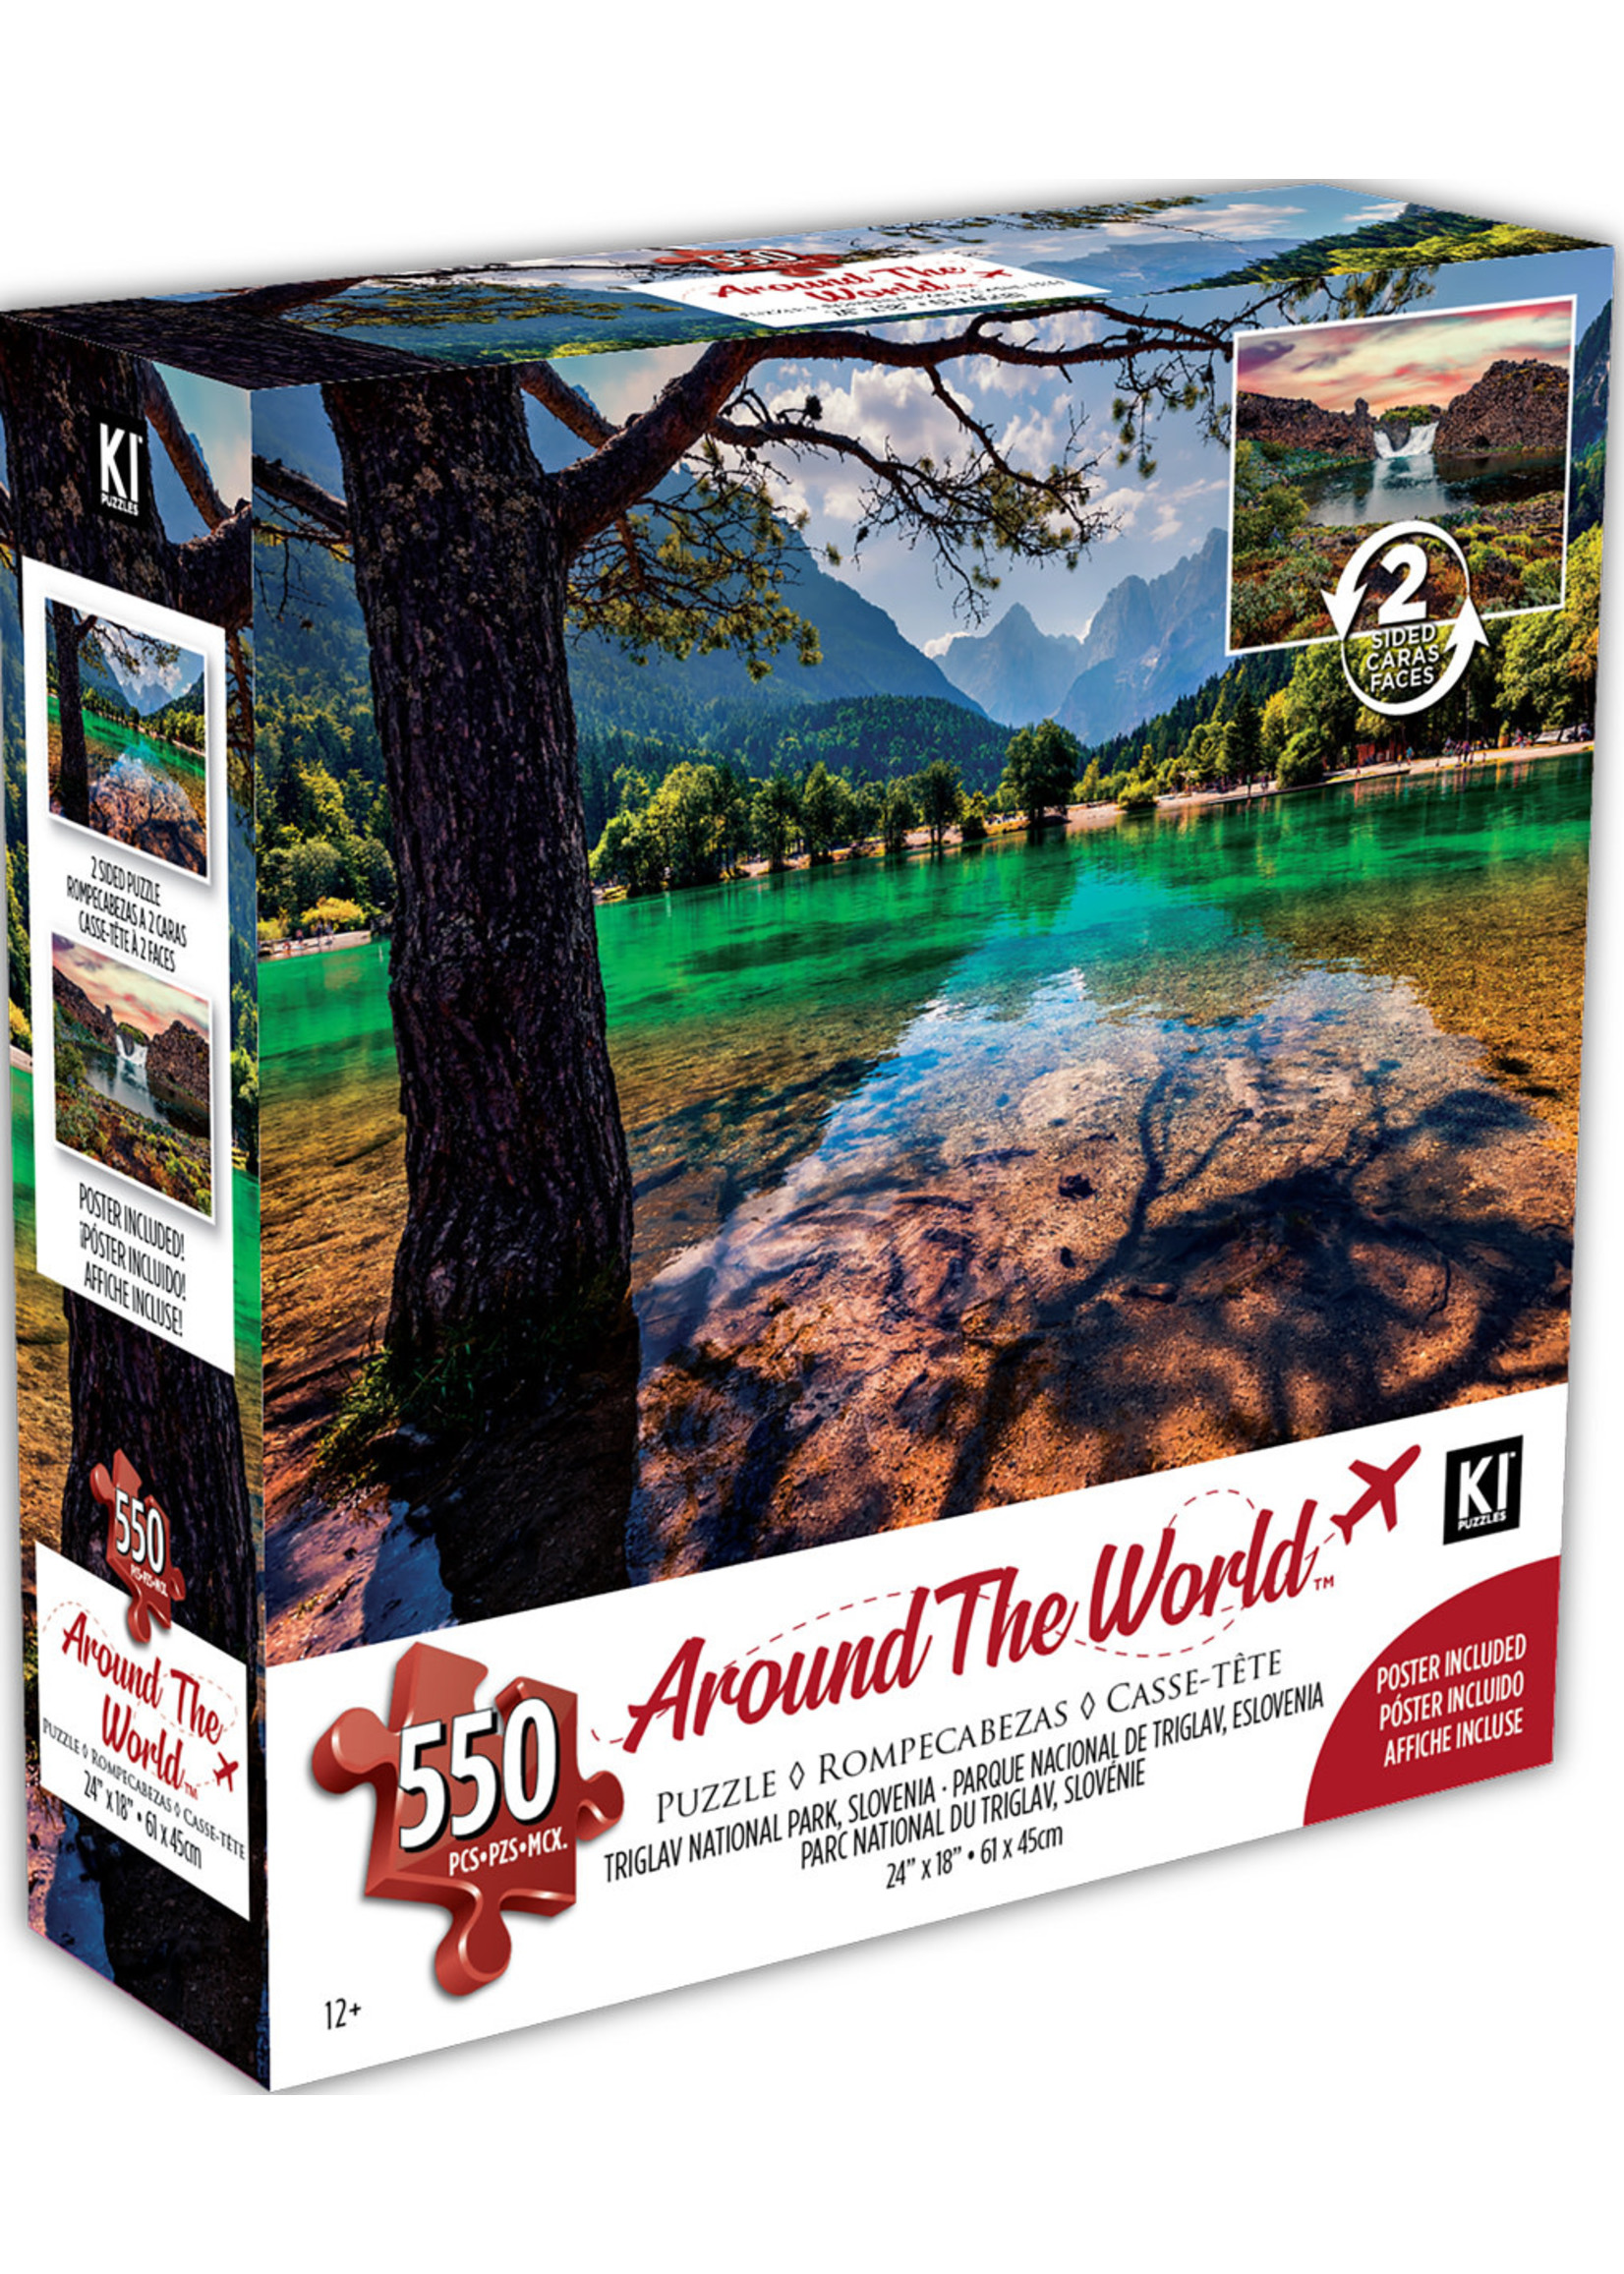 ki puzzles Puzzle KI - 550pcs - Around the world - 3 models